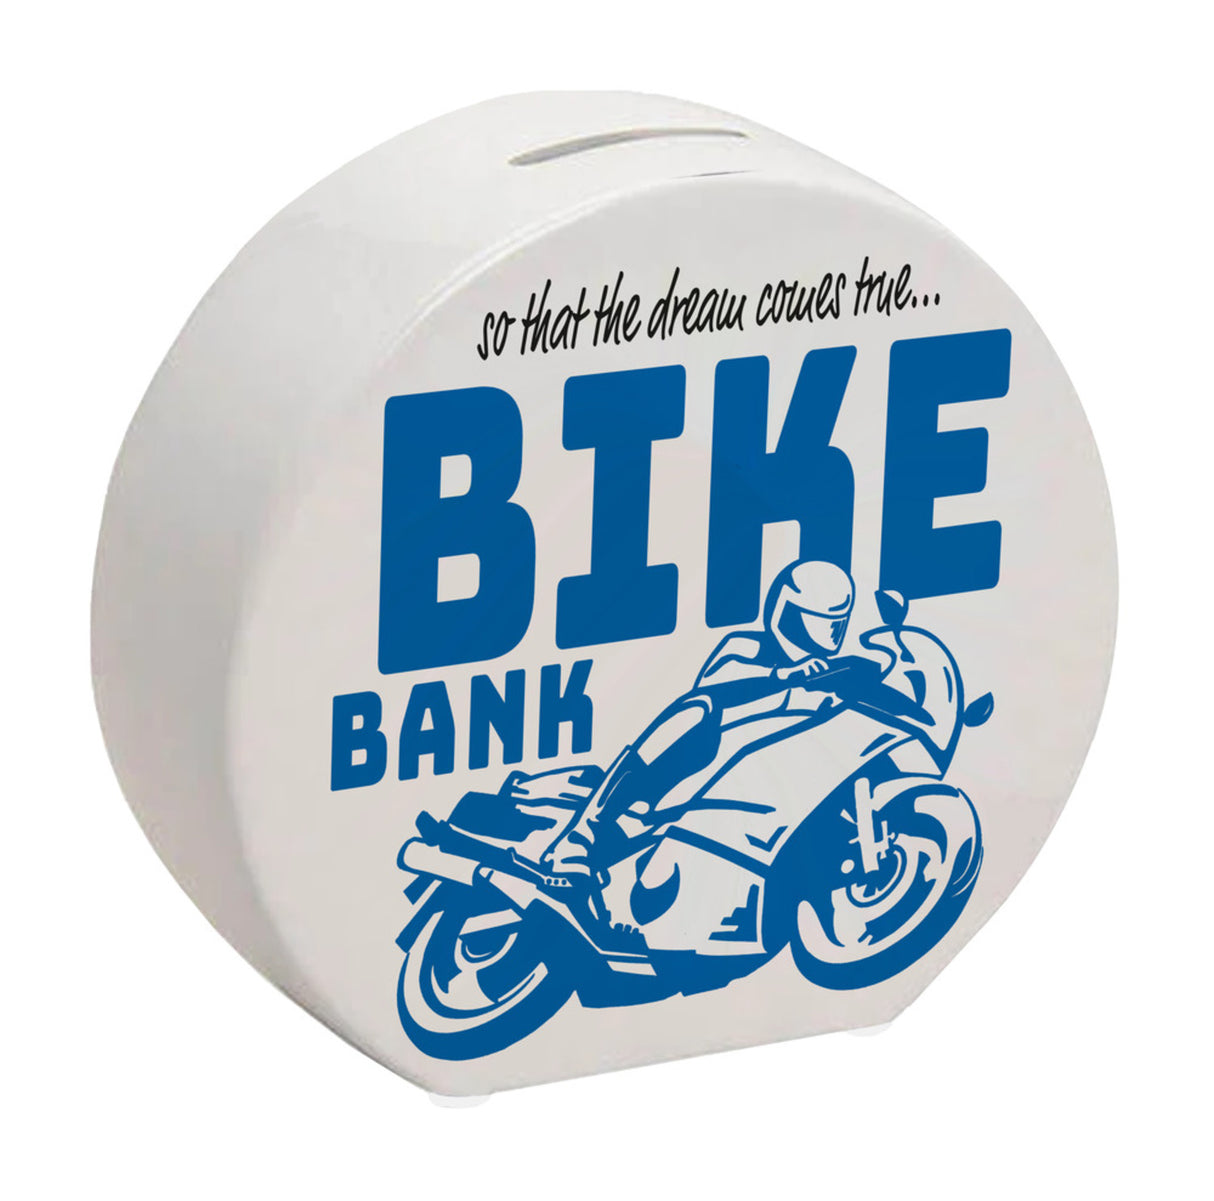 Bike Bank Spardose zum Thema Motorradkauf und Motorrad fahren